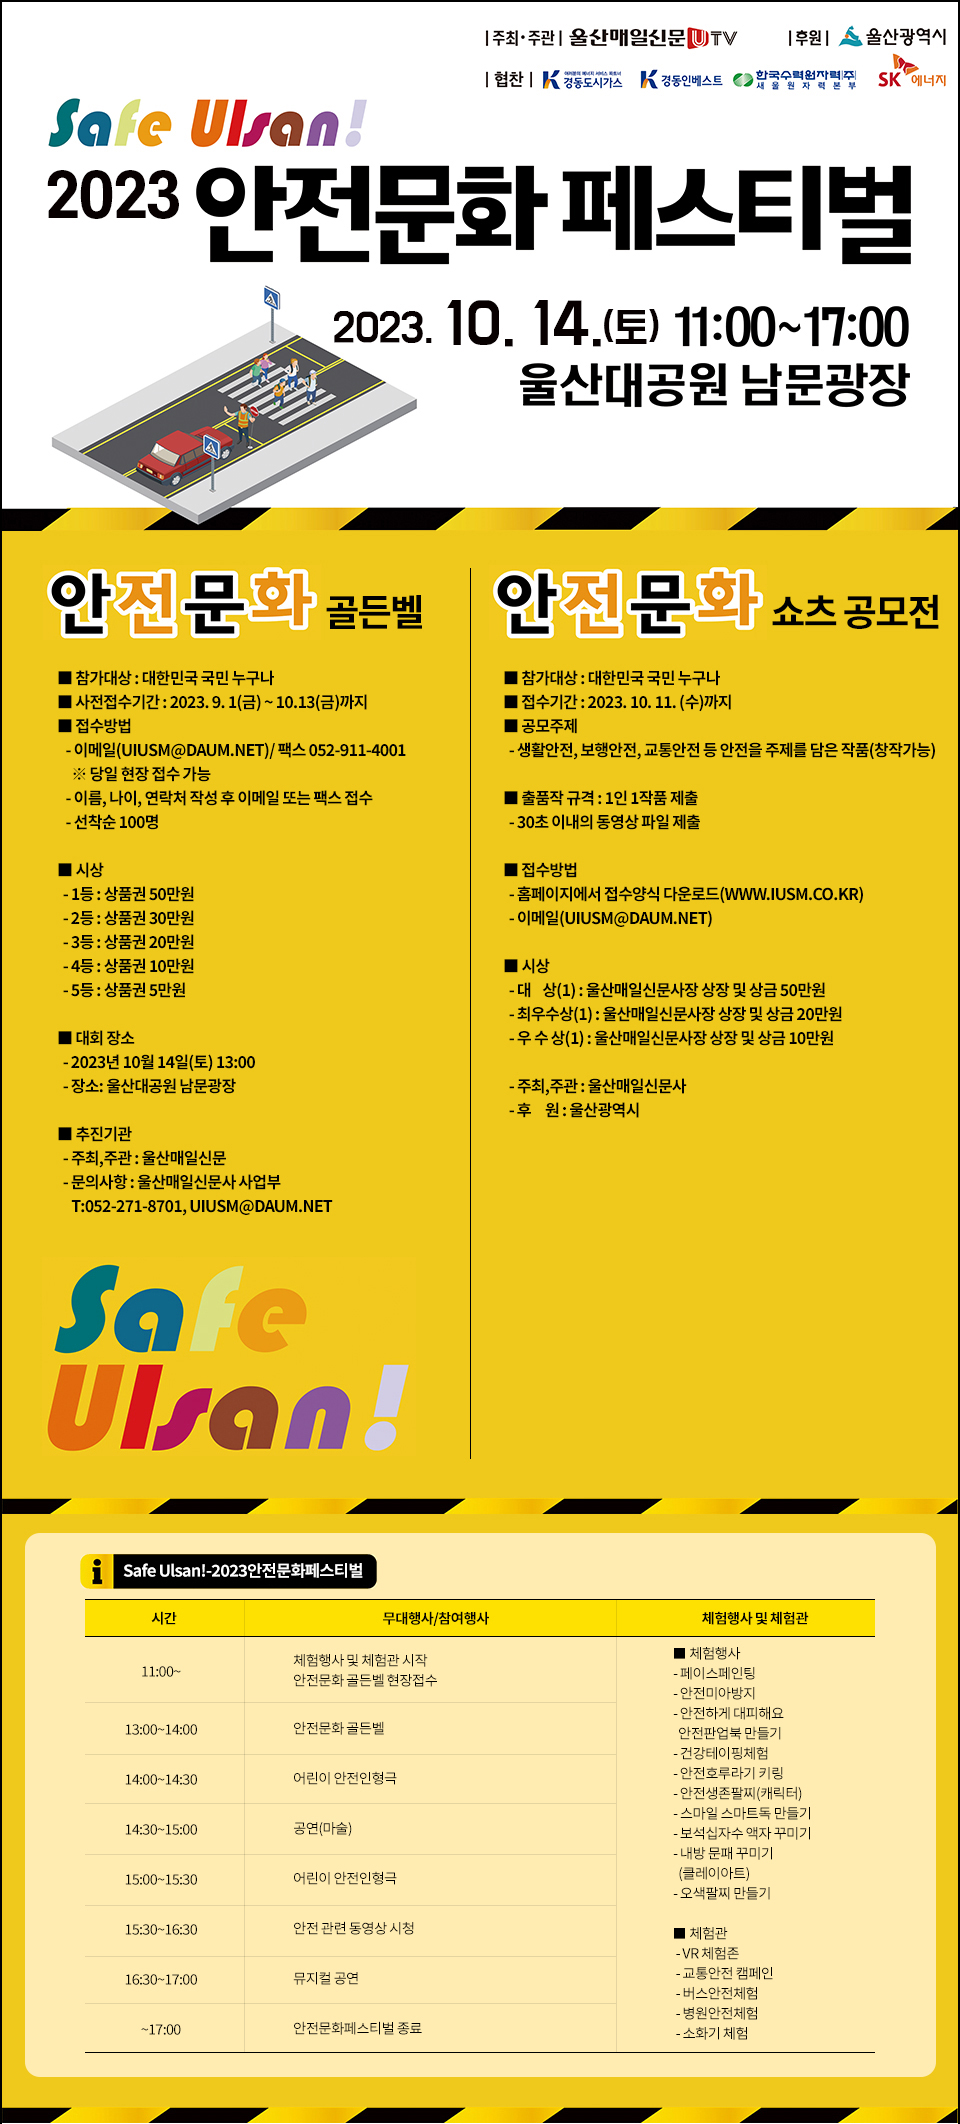 2023 Safe Ulsan! 안전문화 페스티벌 '안전문화 쇼츠 공모전'